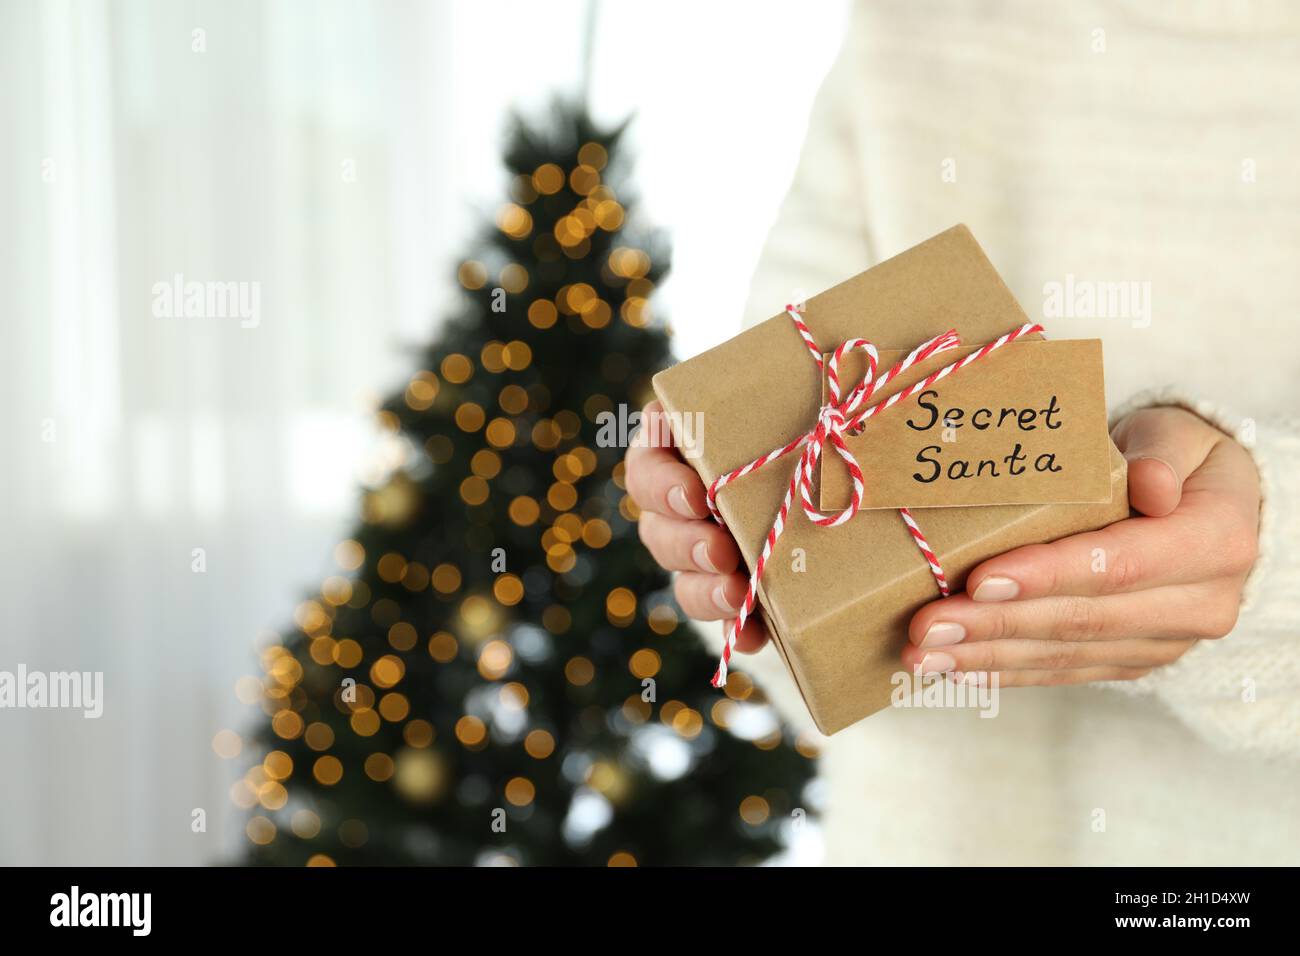 La donna tiene la scatola del regalo segreta di Santa, spazio per il testo. Foto Stock